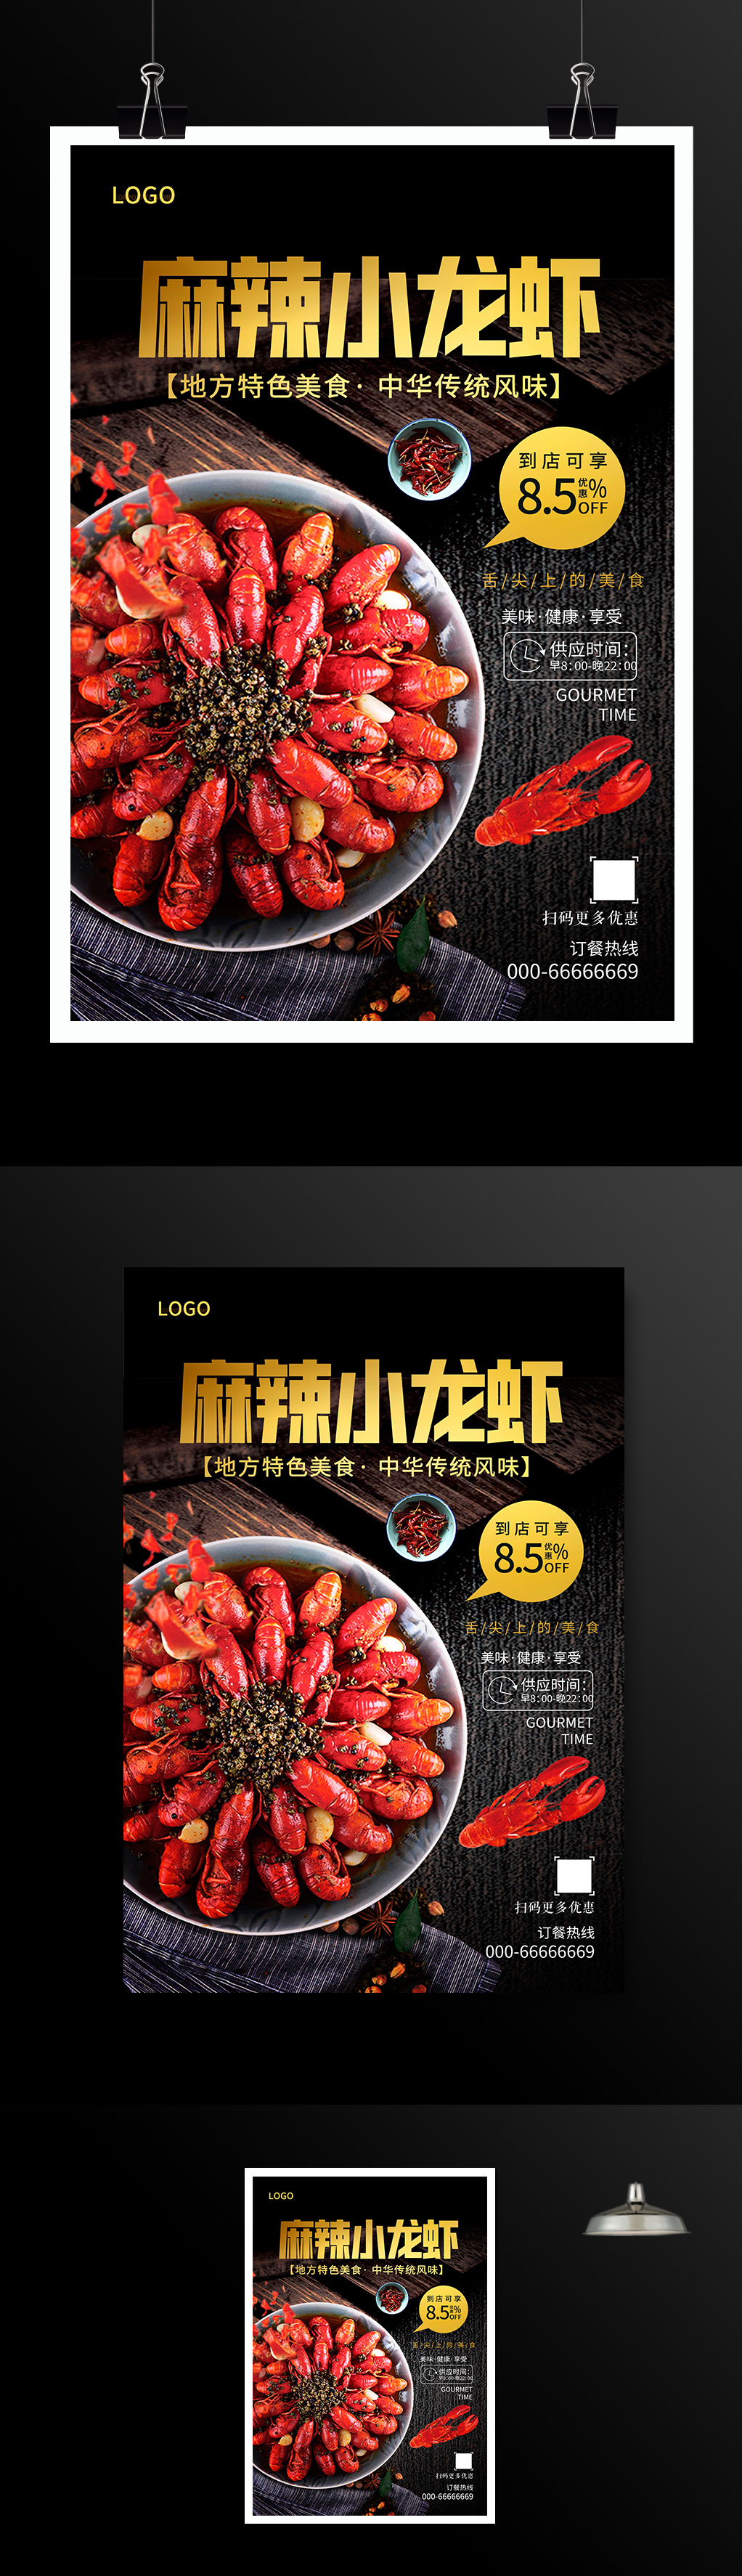 黑色大气麻辣小龙虾美食宣传海报设计